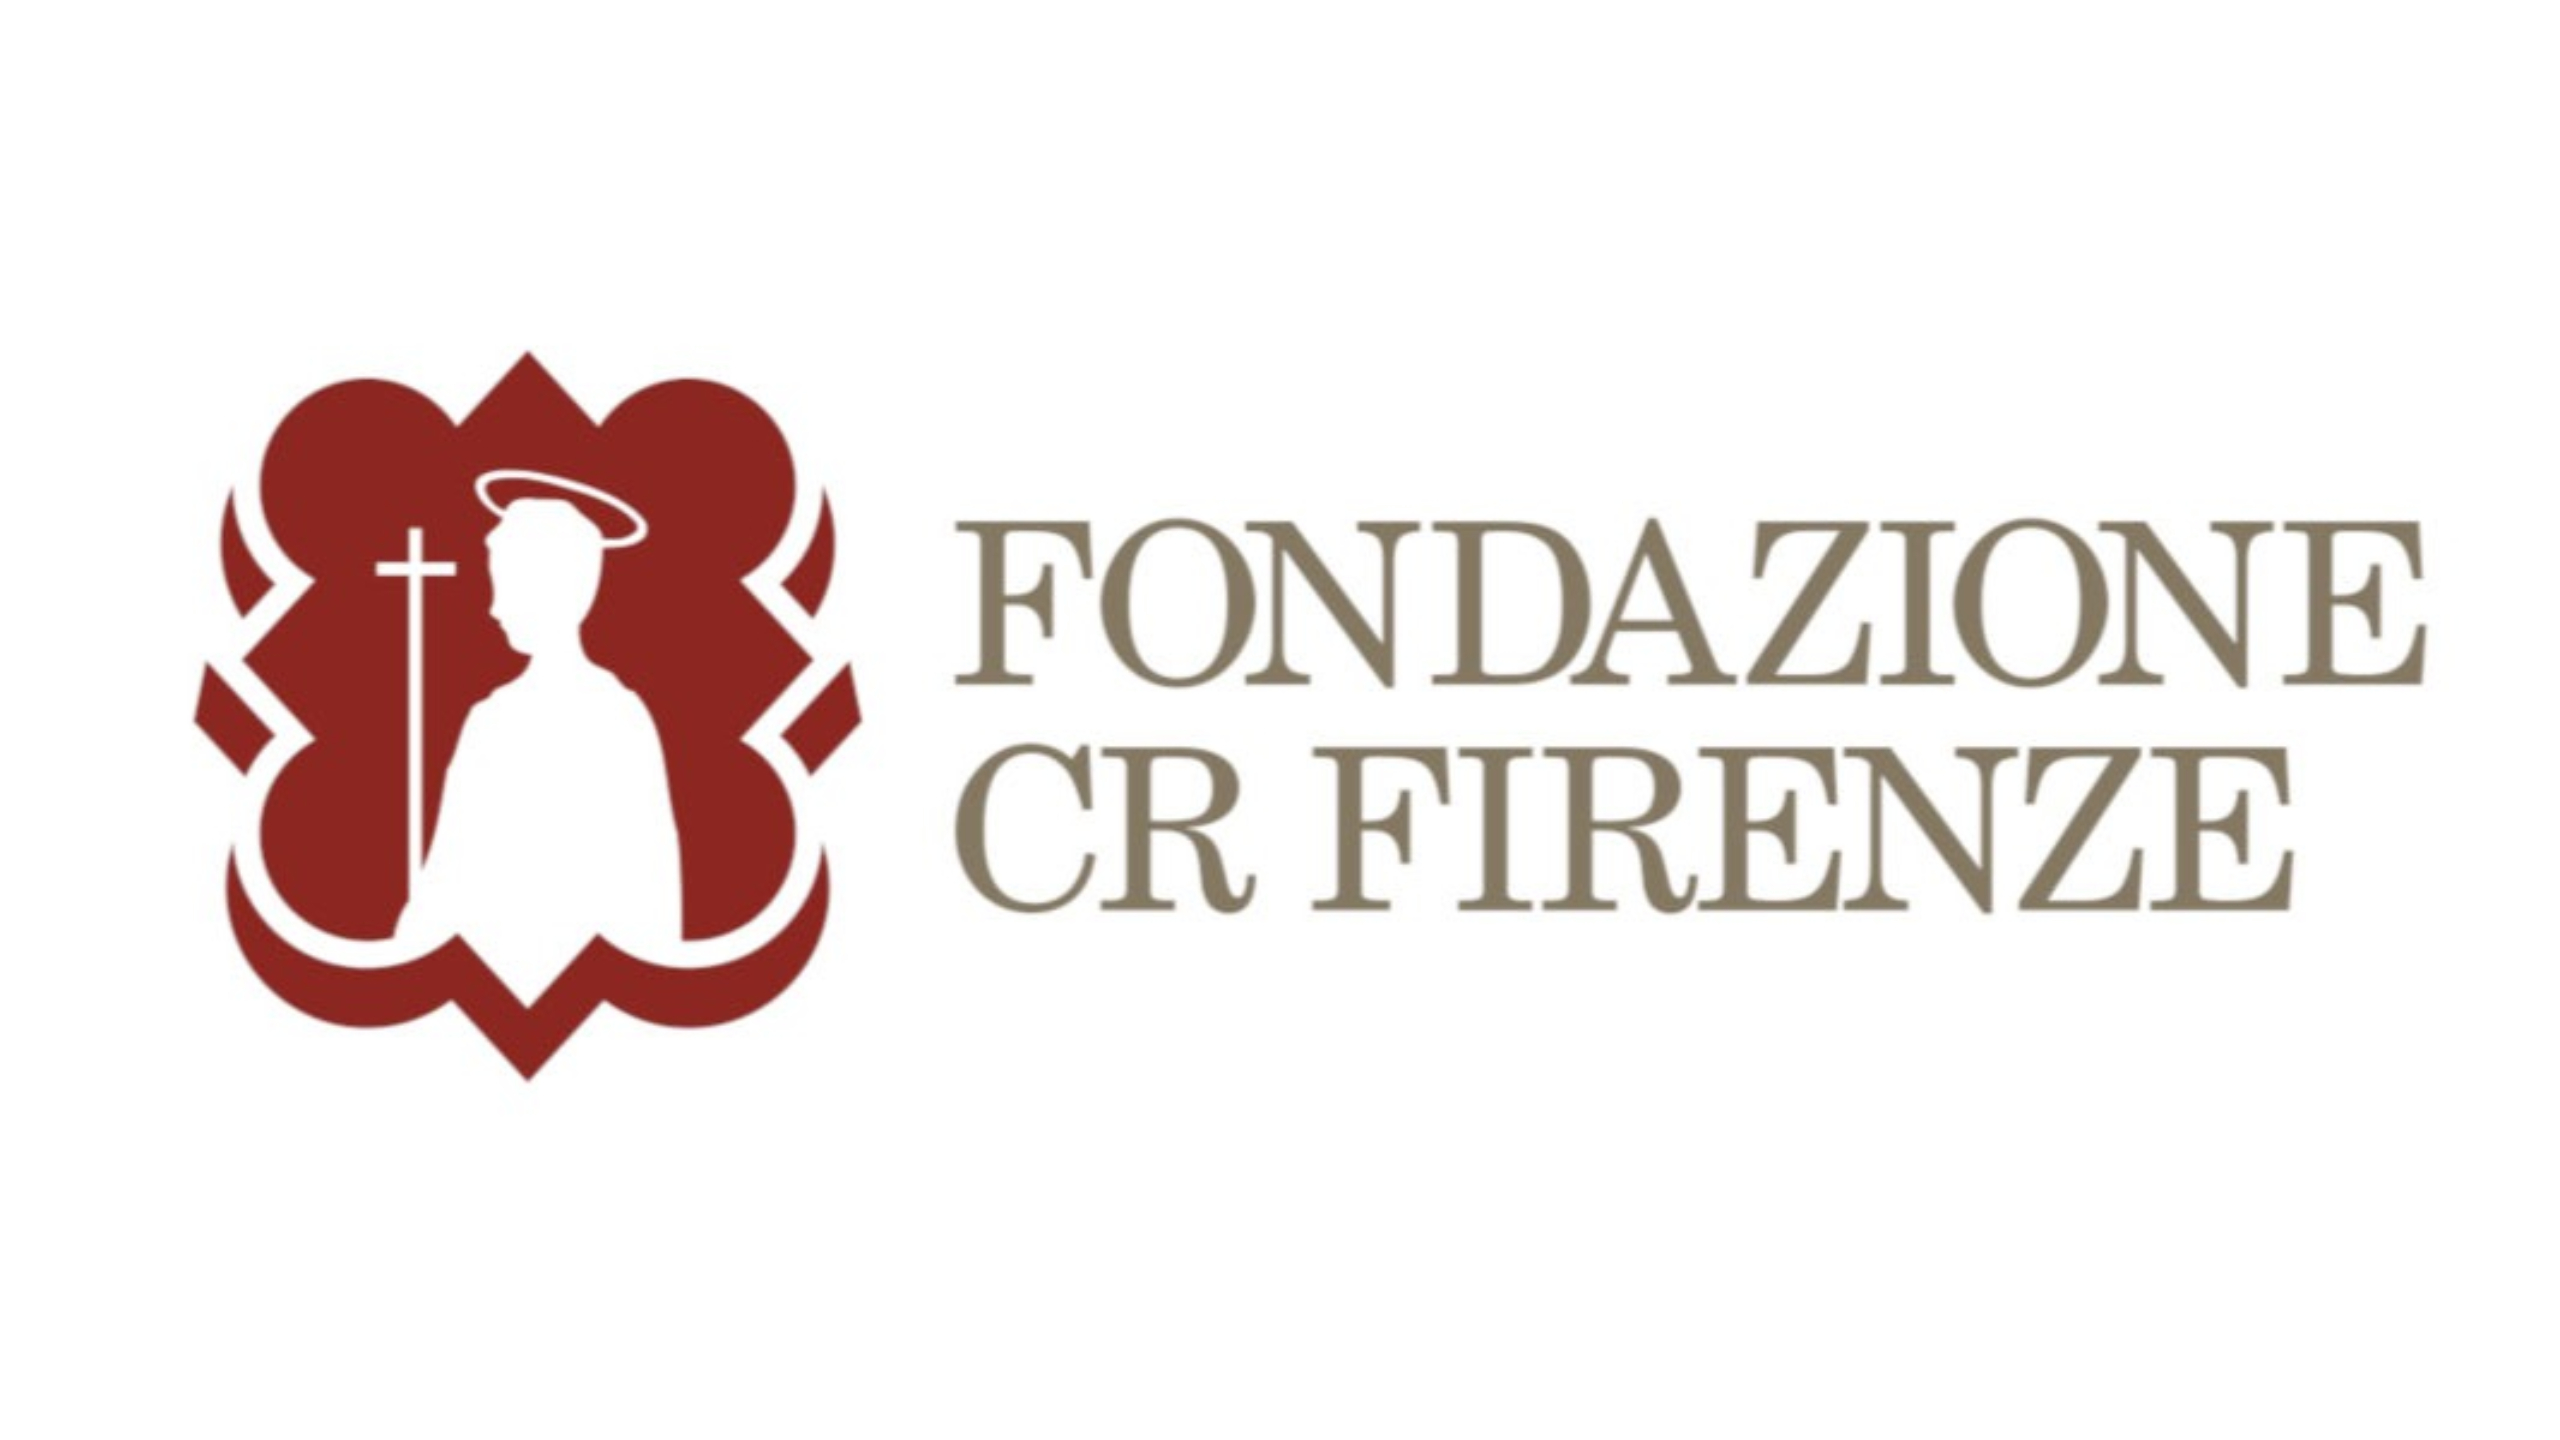 Fondazione Cr stanzia 8,8 milioni a sostegno del settore dell’arte e dei beni culturali in Toscana